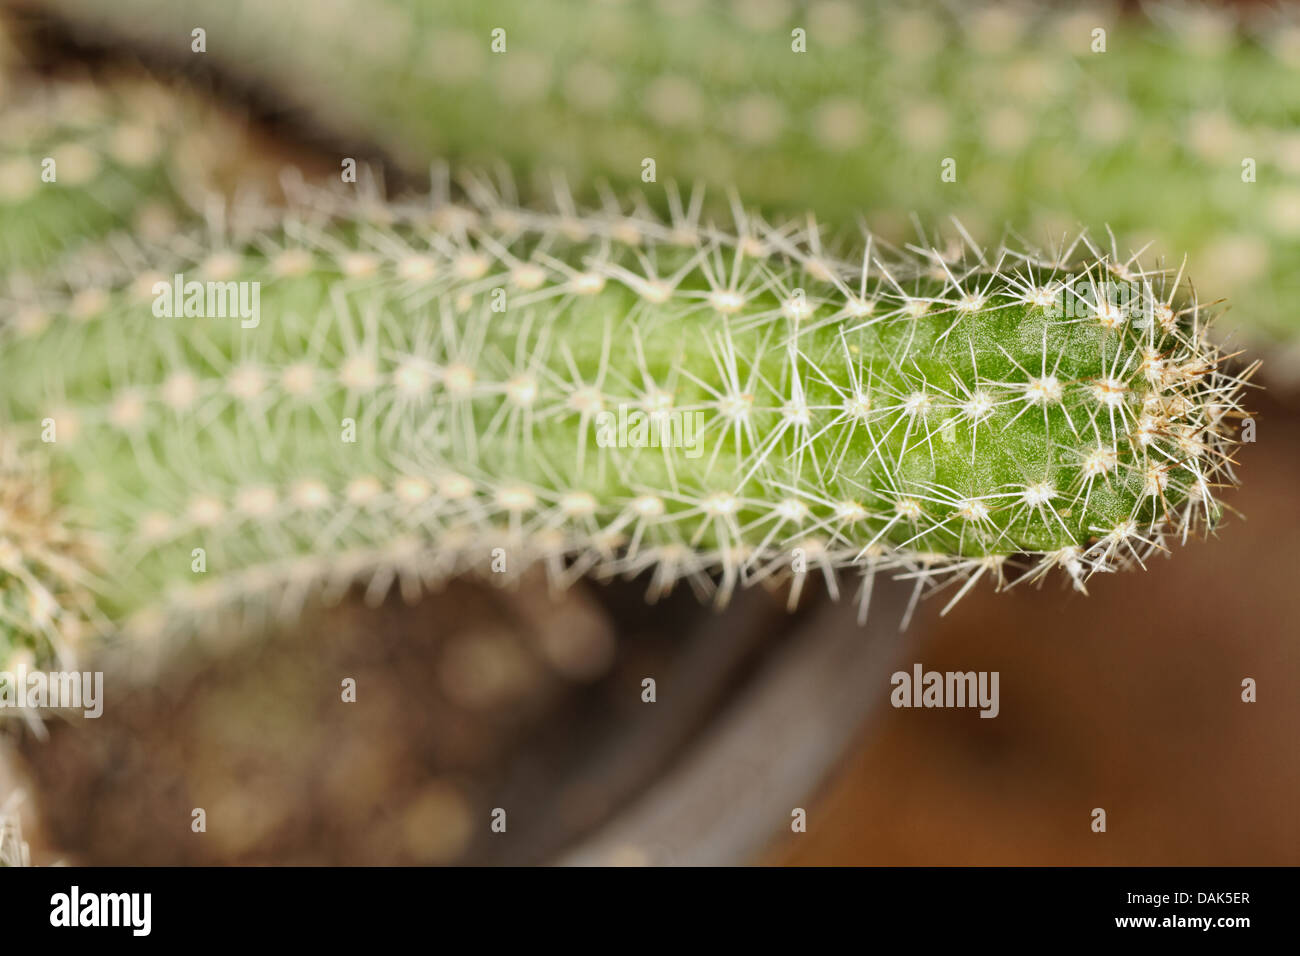 Aporocactus Flagelliformis, Rattail Cactus, Cactaceae Stock Photo